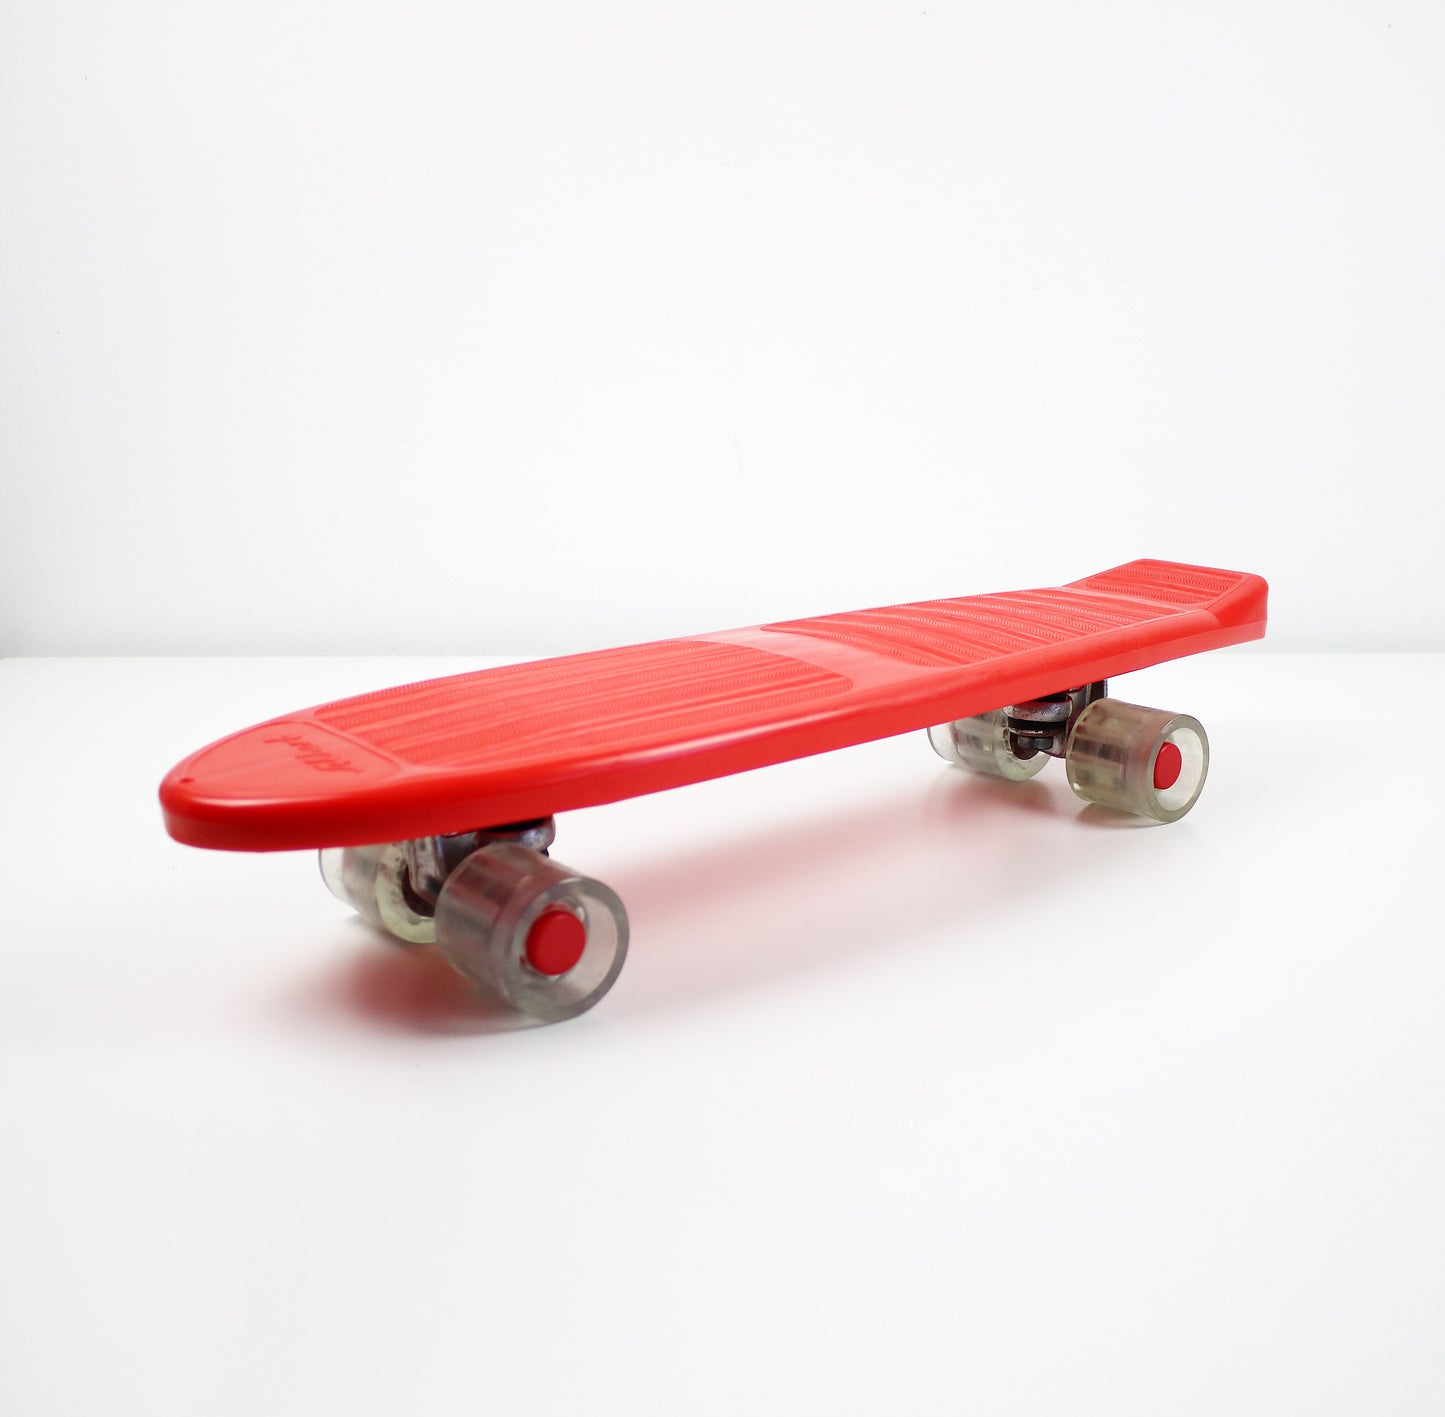 1980s West German Albert skateboard - red plastic unused